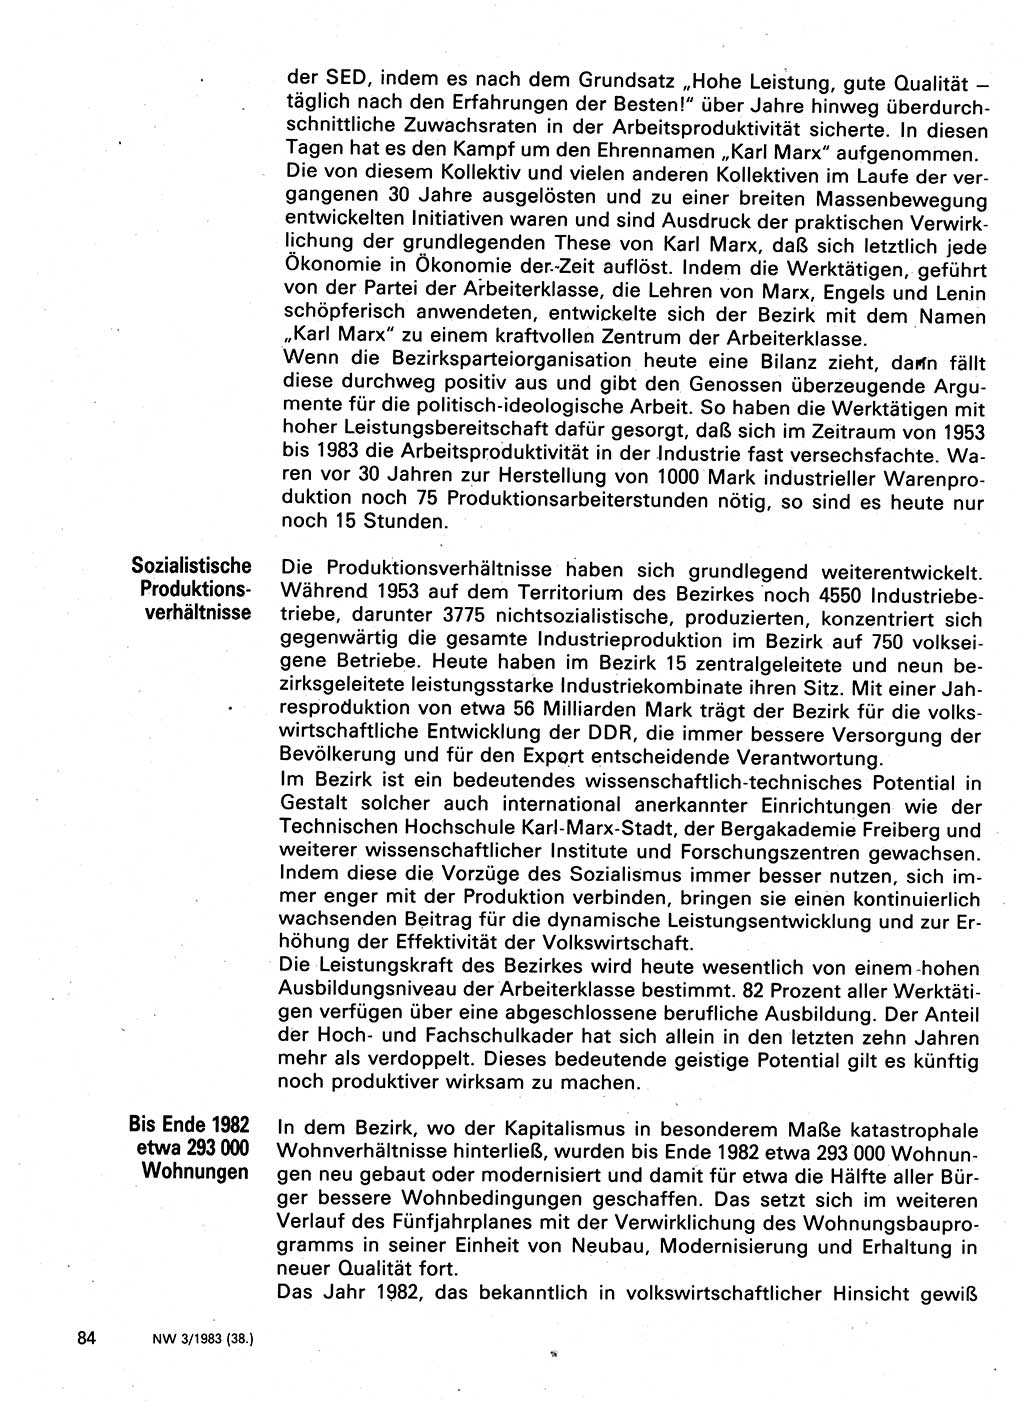 Neuer Weg (NW), Organ des Zentralkomitees (ZK) der SED (Sozialistische Einheitspartei Deutschlands) für Fragen des Parteilebens, 38. Jahrgang [Deutsche Demokratische Republik (DDR)] 1983, Seite 84 (NW ZK SED DDR 1983, S. 84)